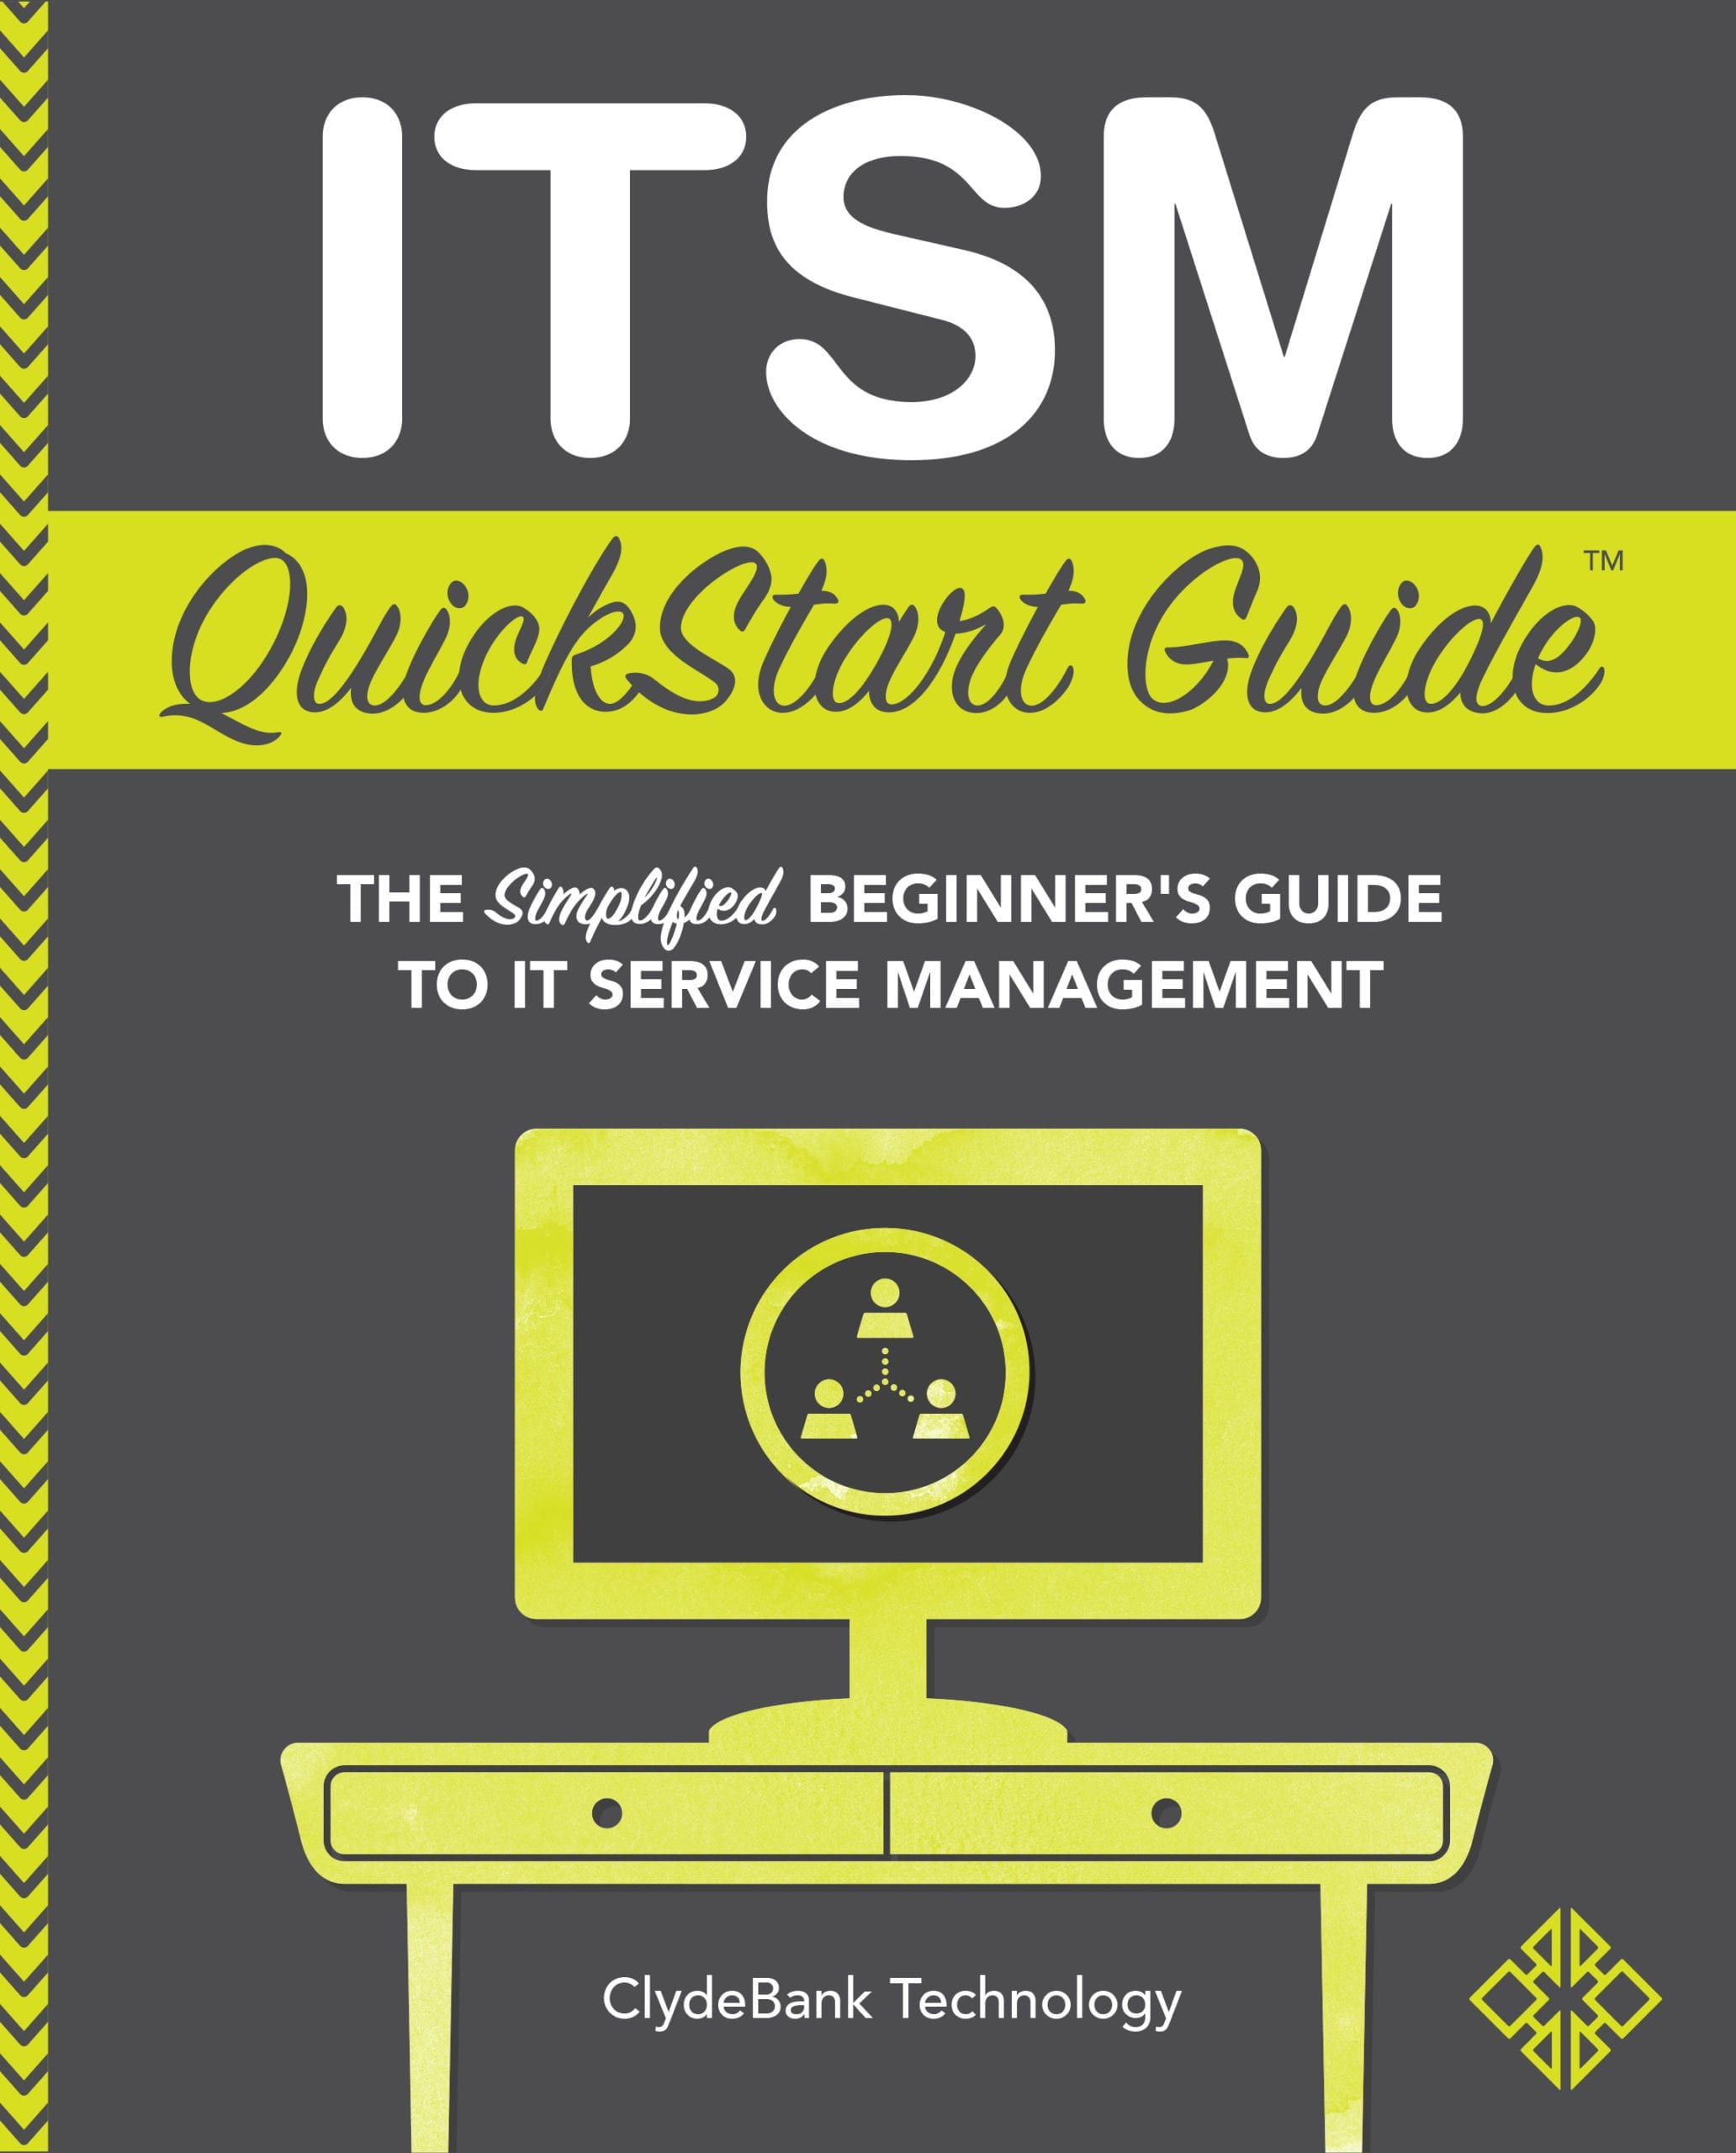 ITSM QuickStart Guide Cover